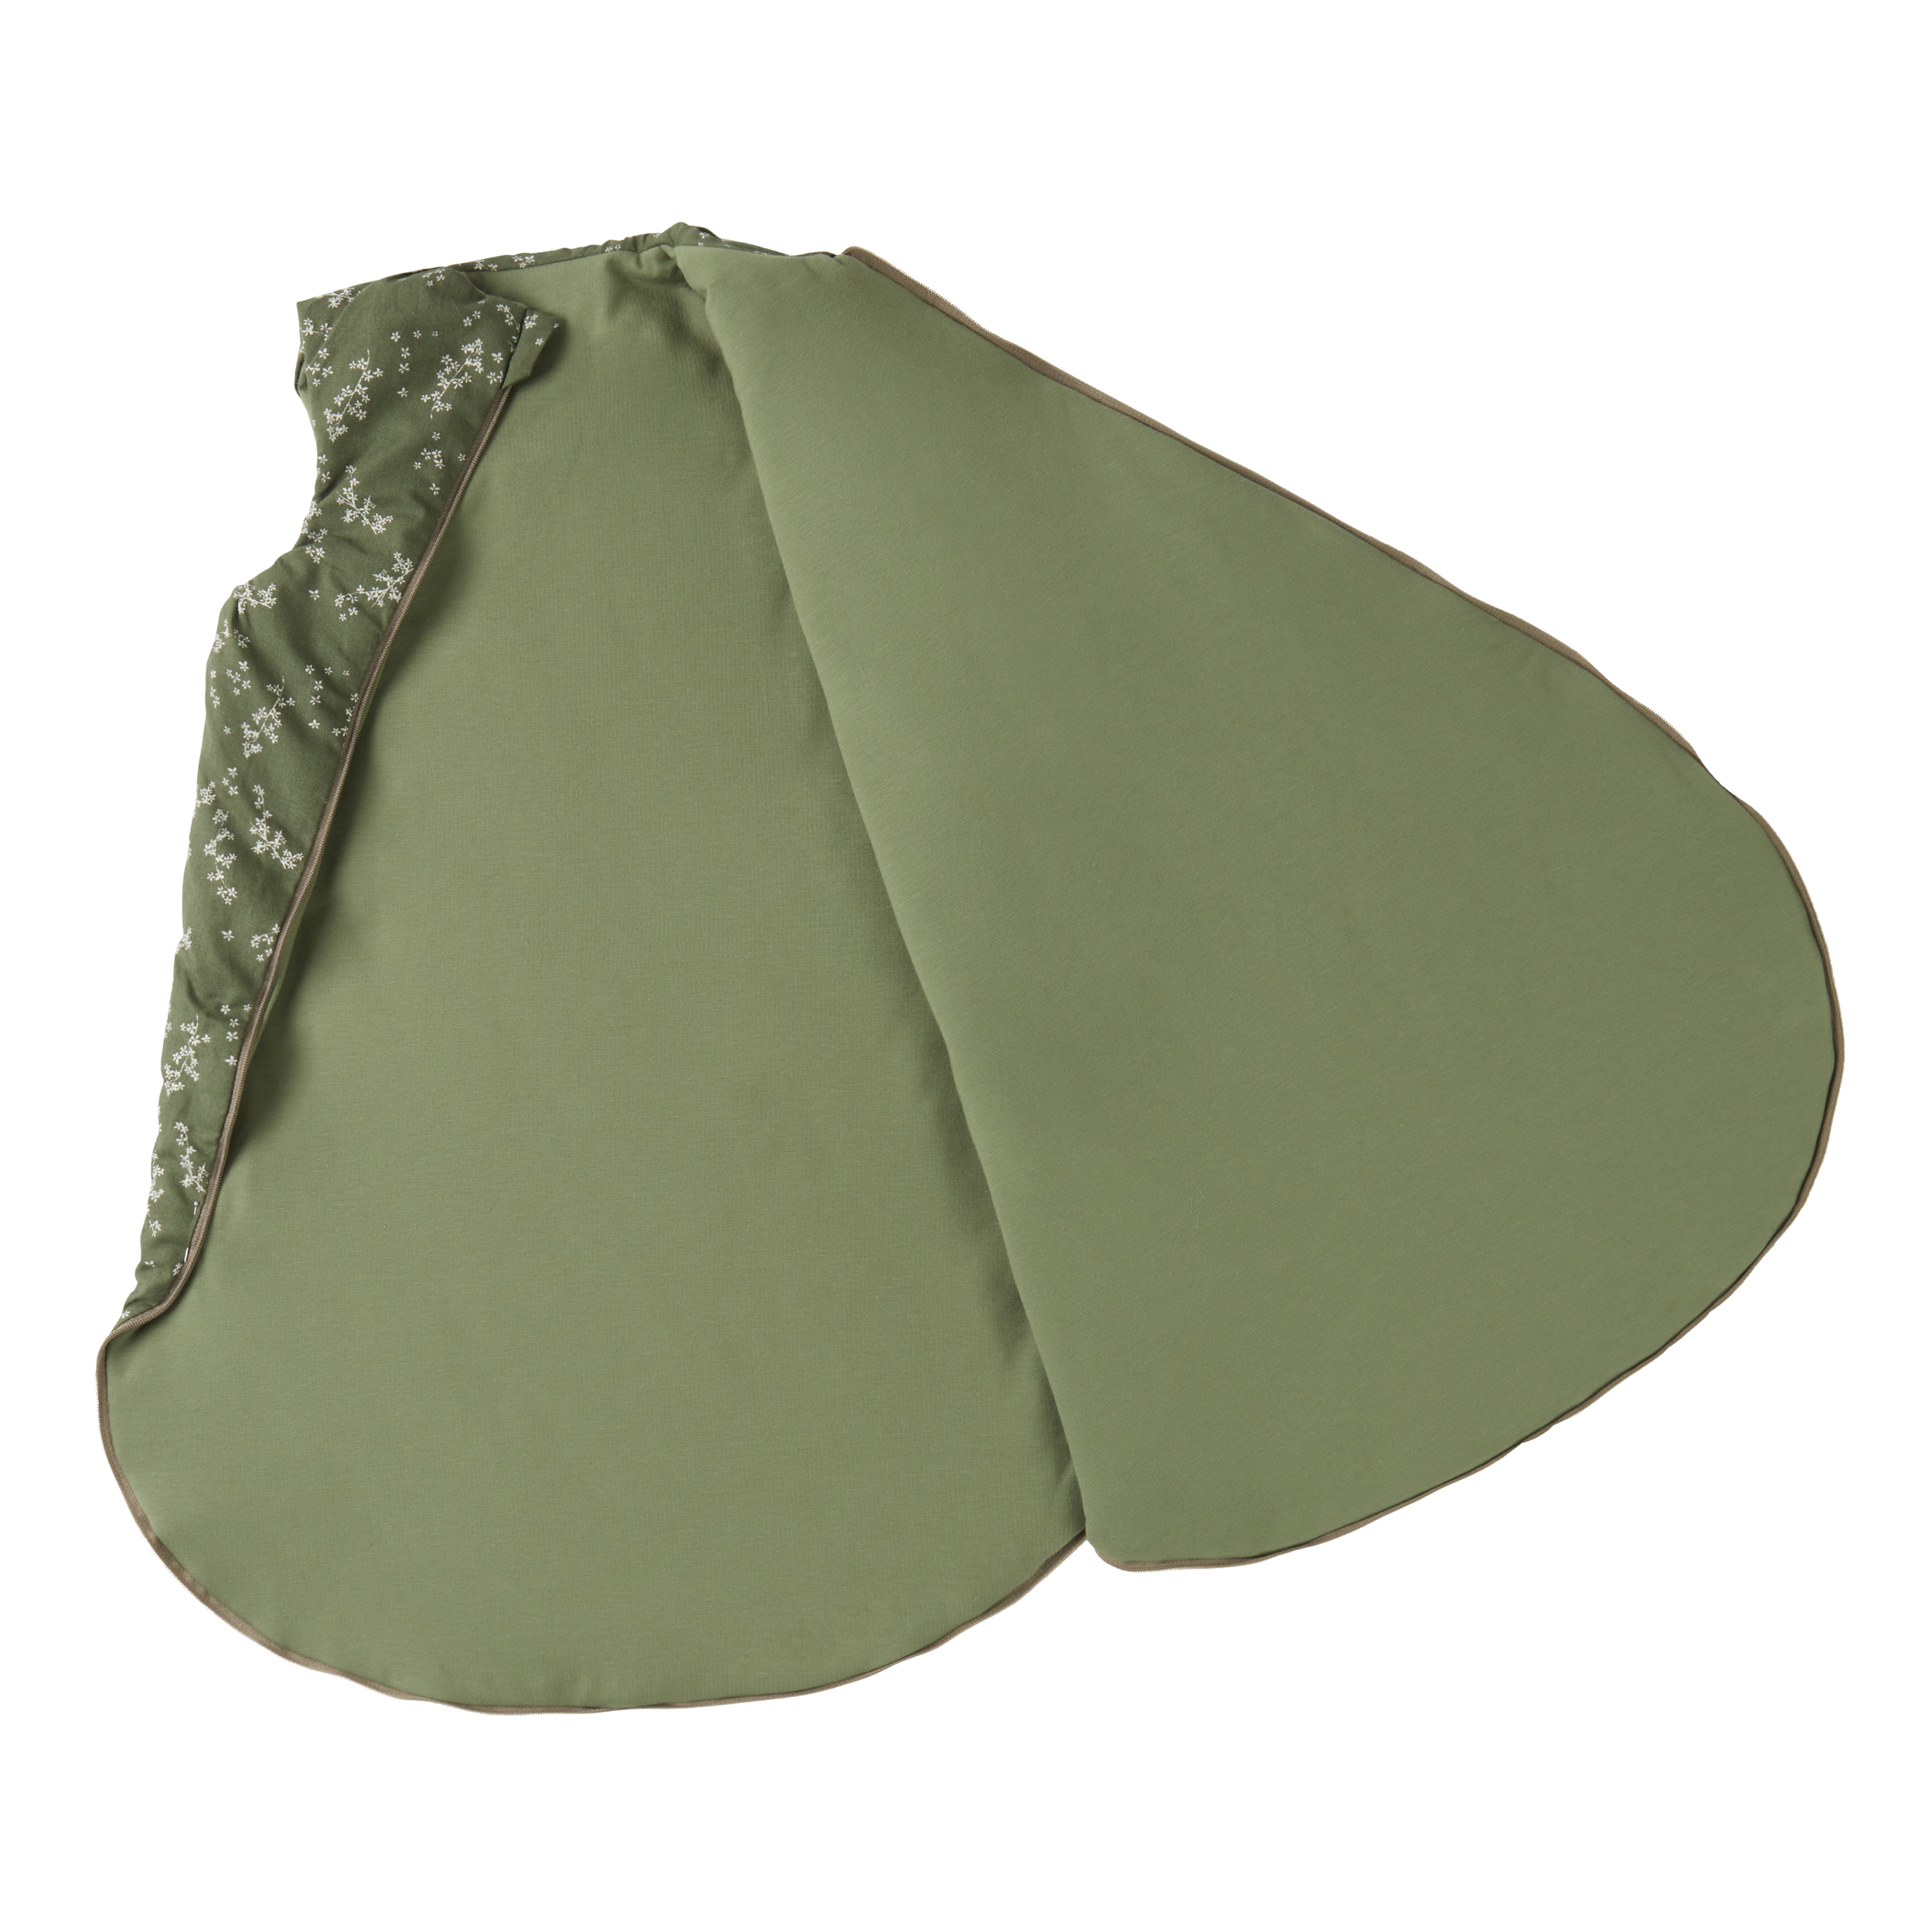 Stories-Cocoon-mid-season-sleeping-bag-green-jasmine-nobodinoz-3-8435574930118